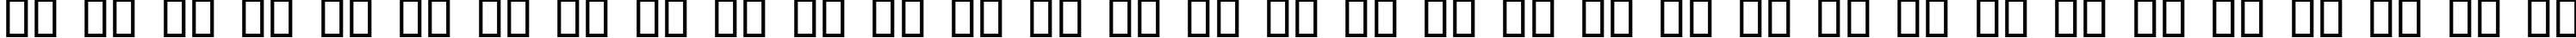 Пример написания русского алфавита шрифтом Alpine Regular